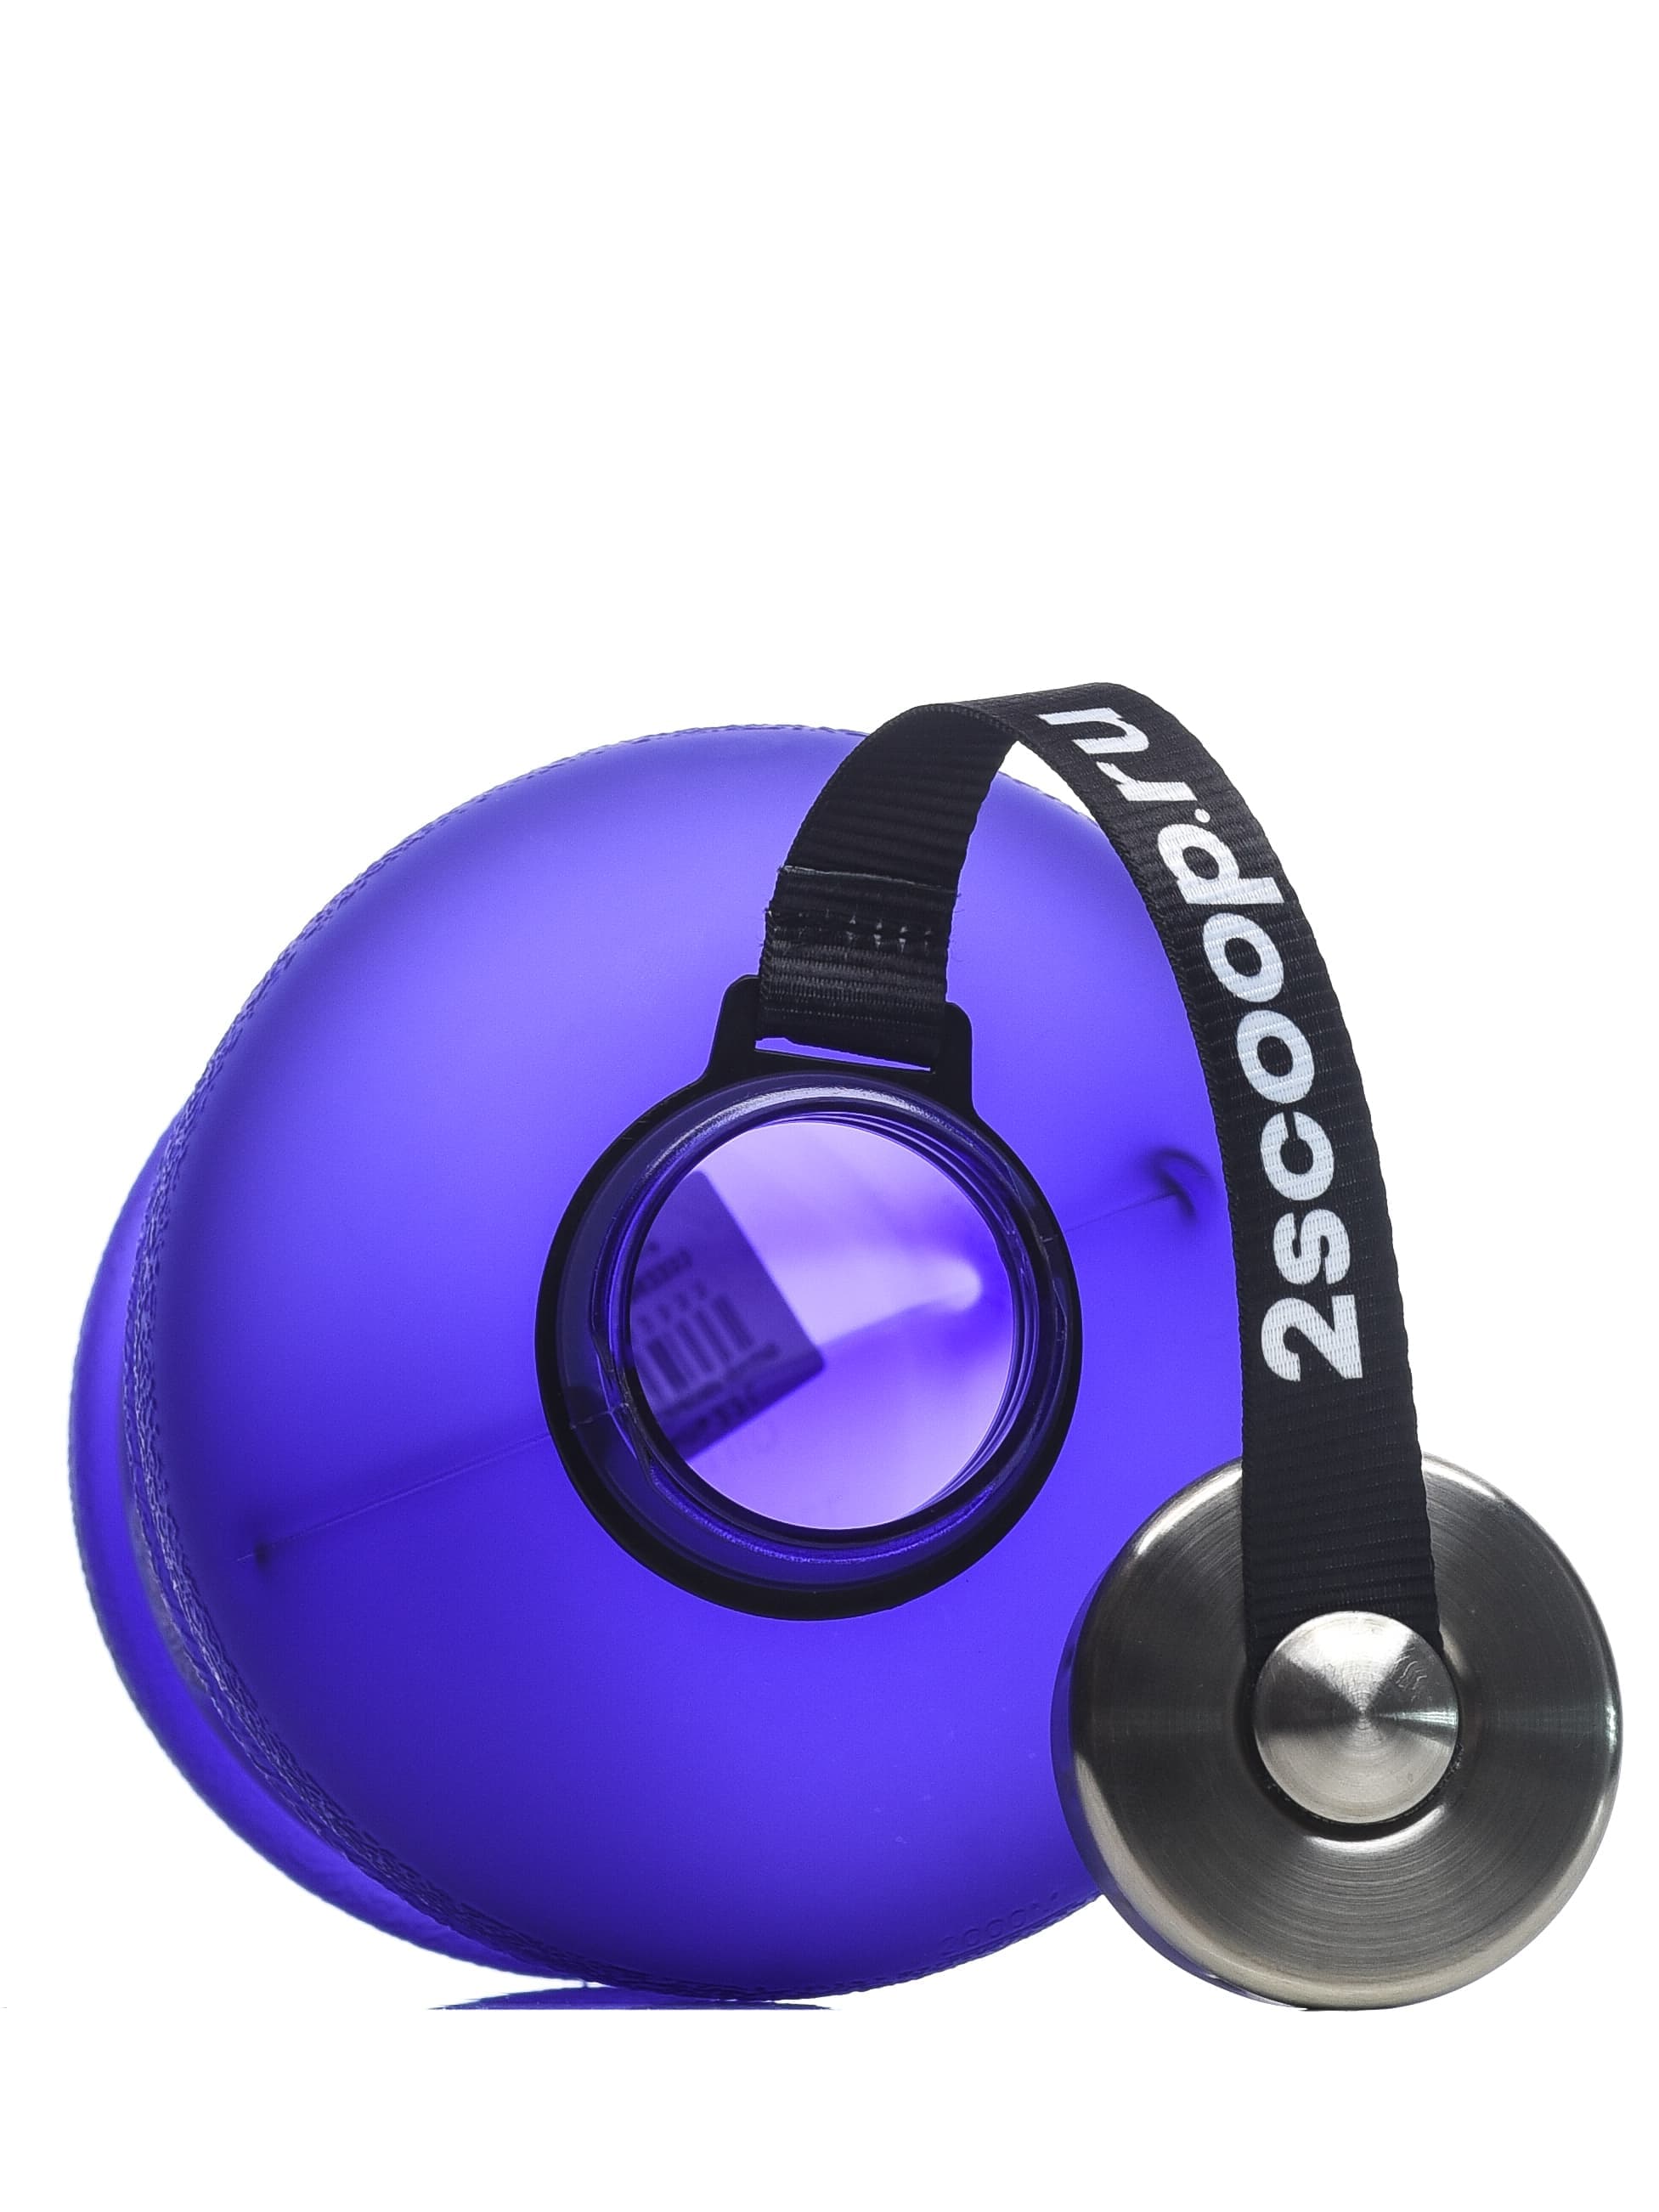 2scoop Бутыль 2.2 L прорезиненный металлическая крышка (Фиолетовый) фото